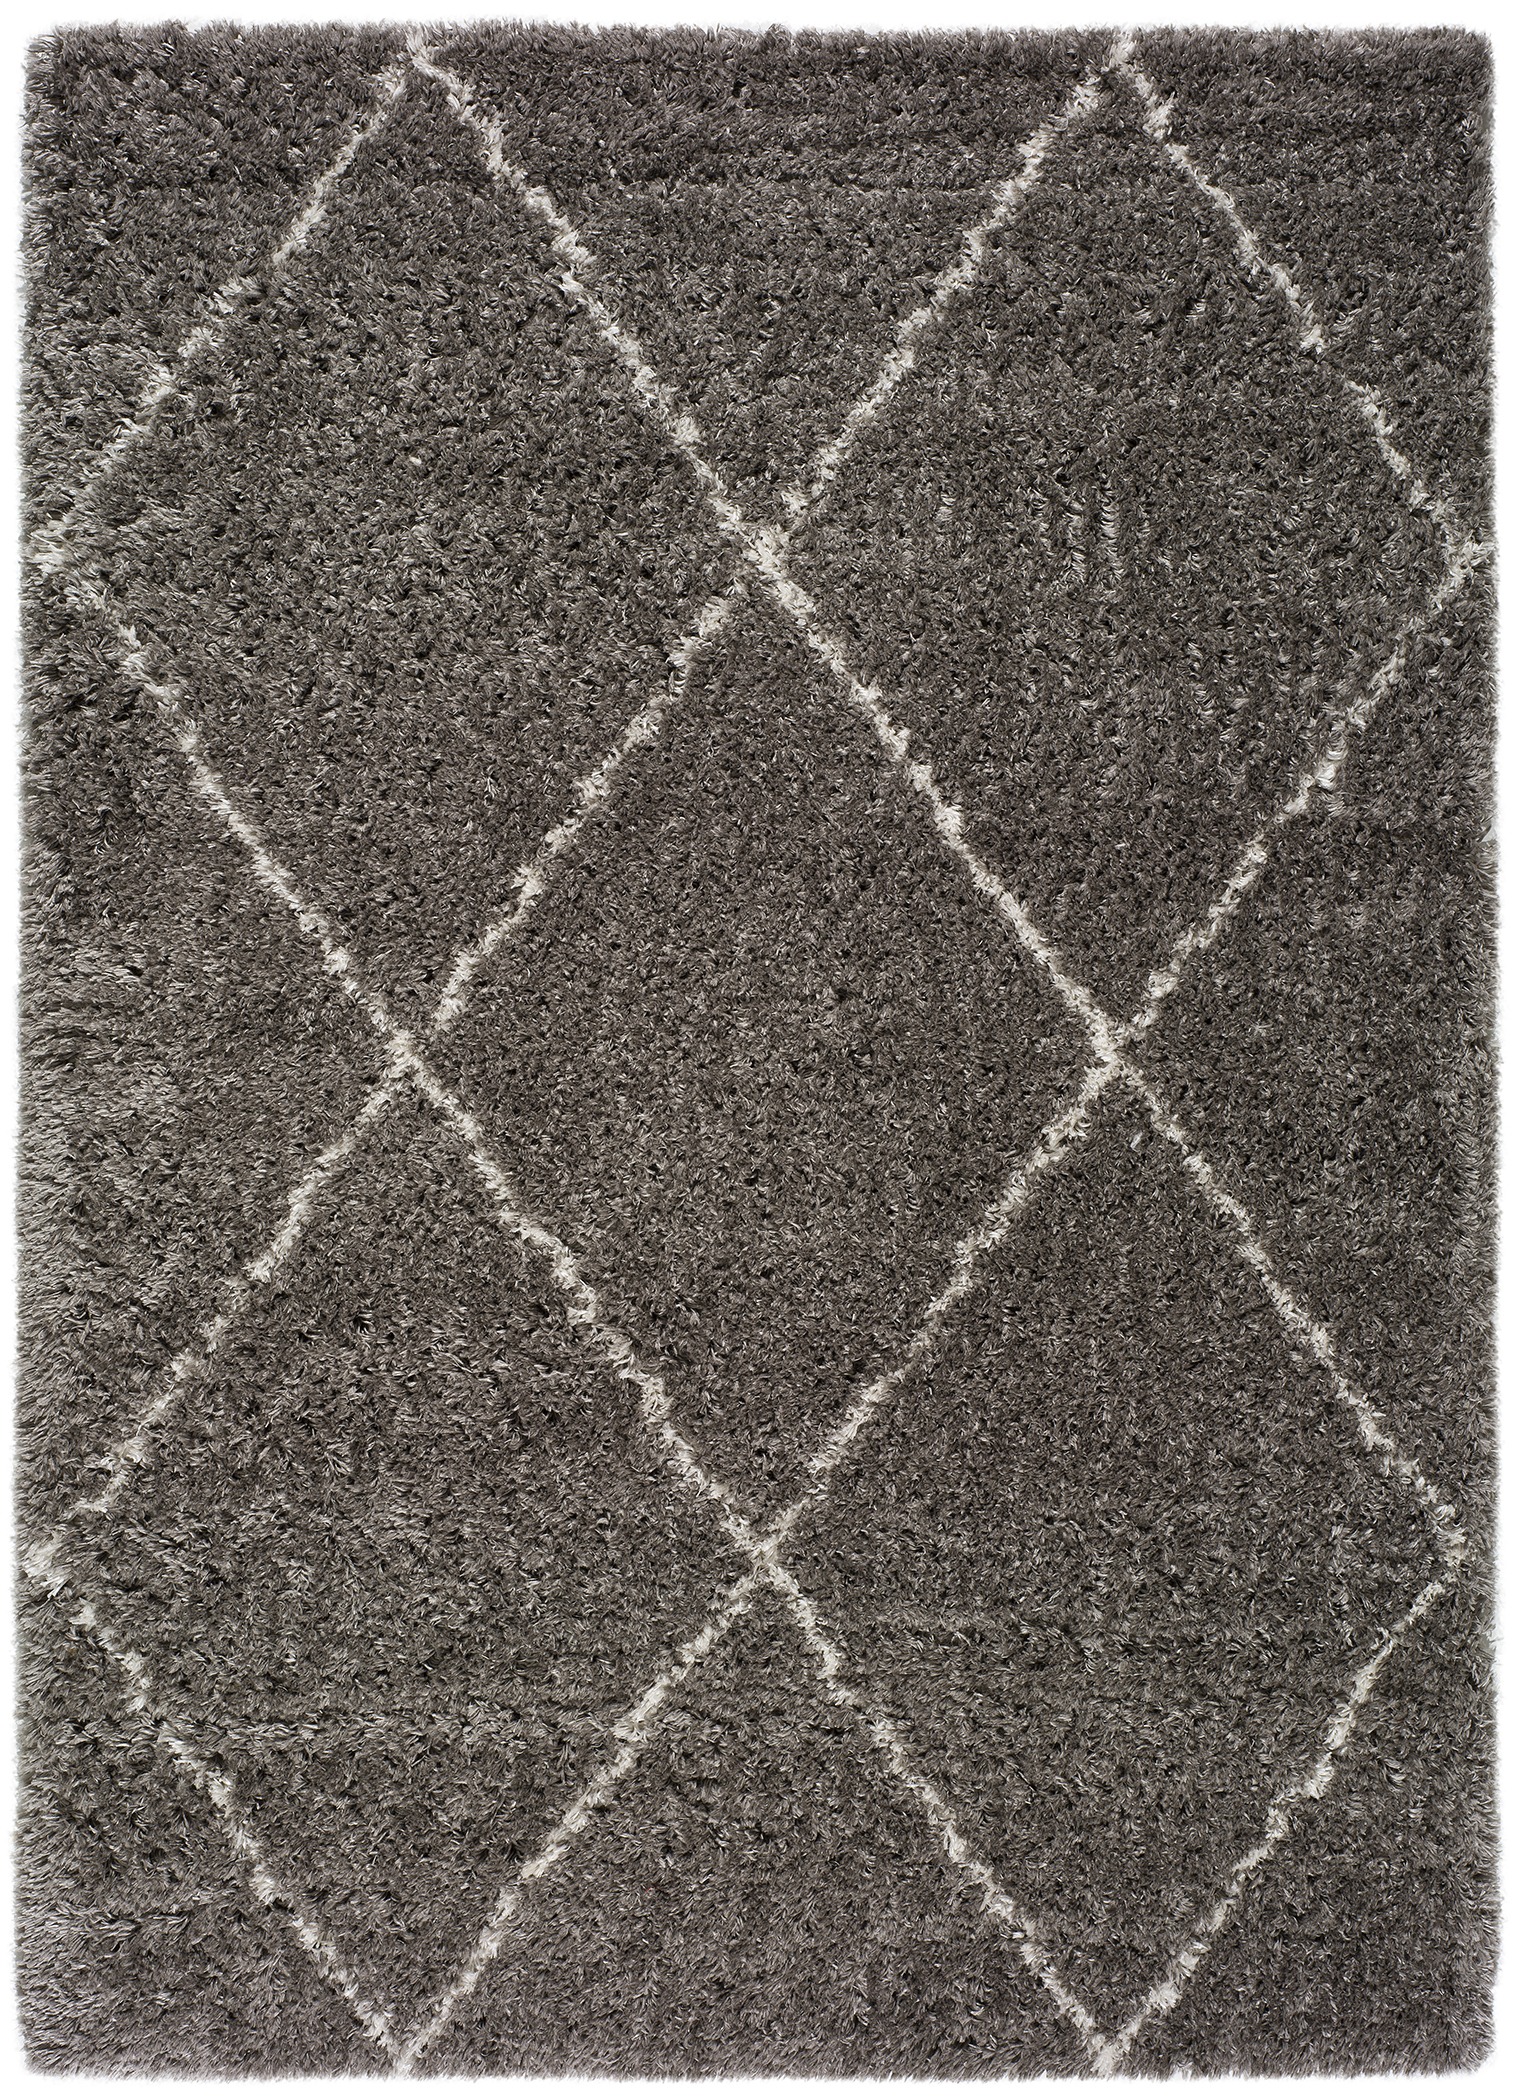 Venta de alfombras y moquetas - Alfombras Imperio 1979